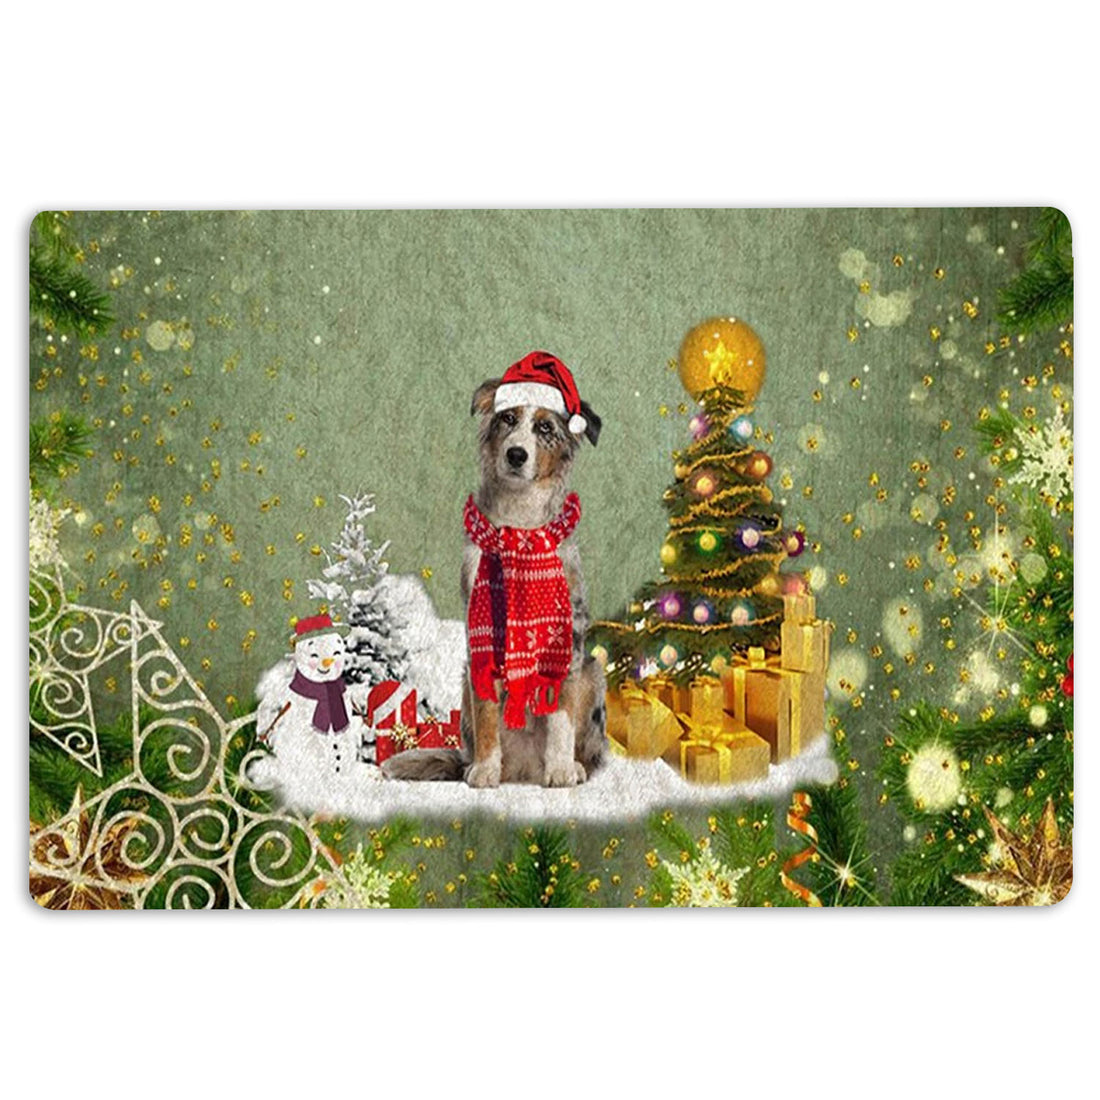 Ohaprints-Doormat-Outdoor-Indoor-Australian-Shepherd-Merry-Christmas-Snow-Christmas-Tree-Xmas-Rubber-Door-Mat-1453-18'' x 30''